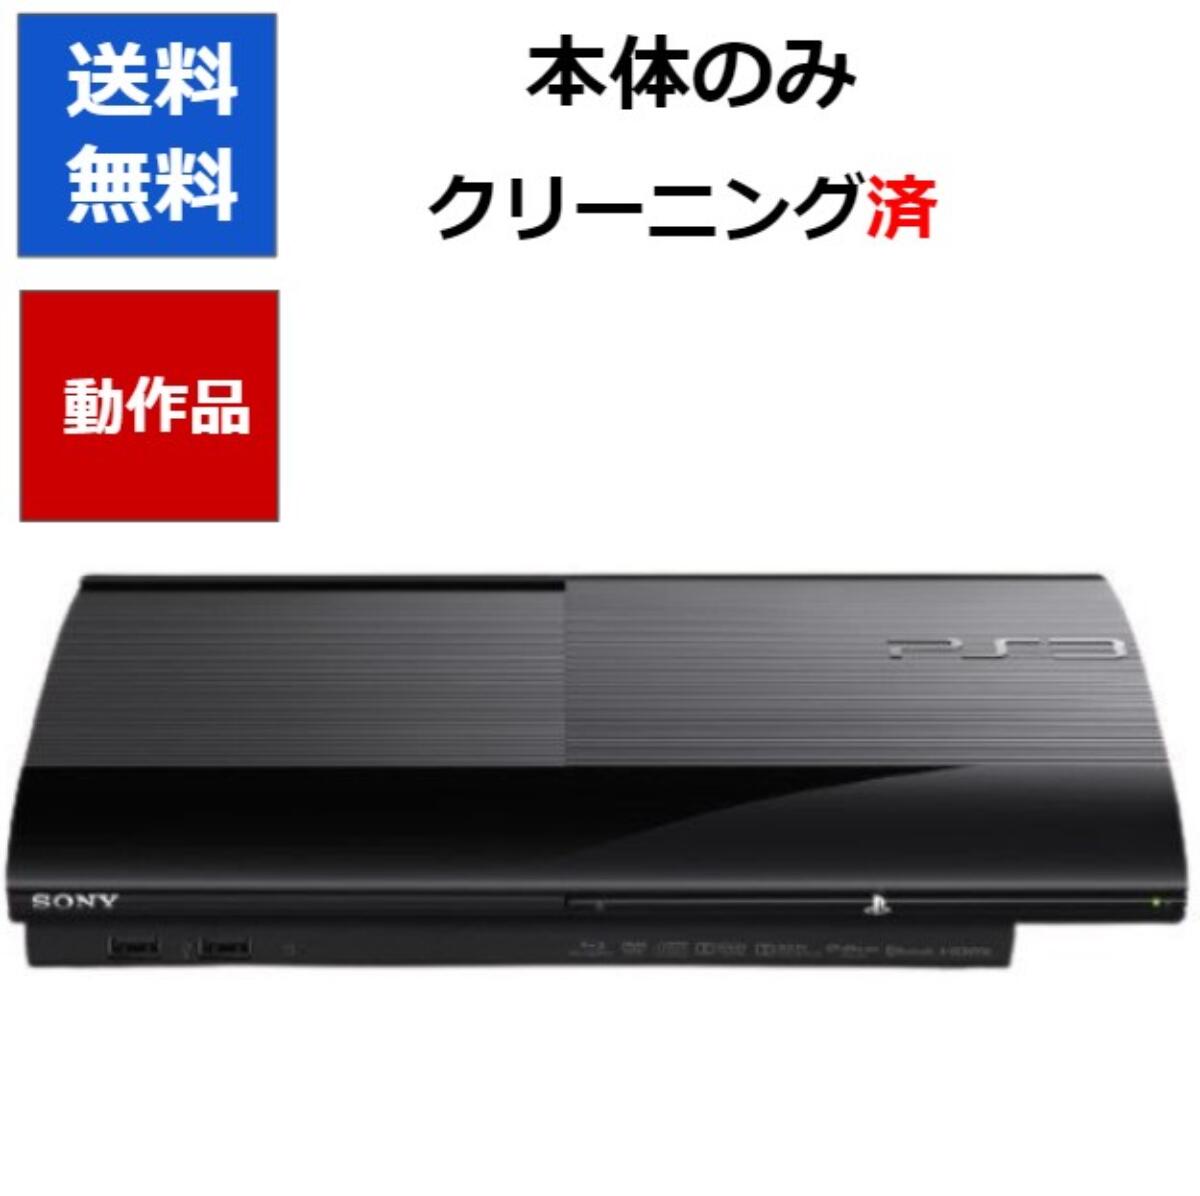 【中古】(非常に良い)PlayStation 3 チャコール・ブラック 250GB (CECH-4200B)